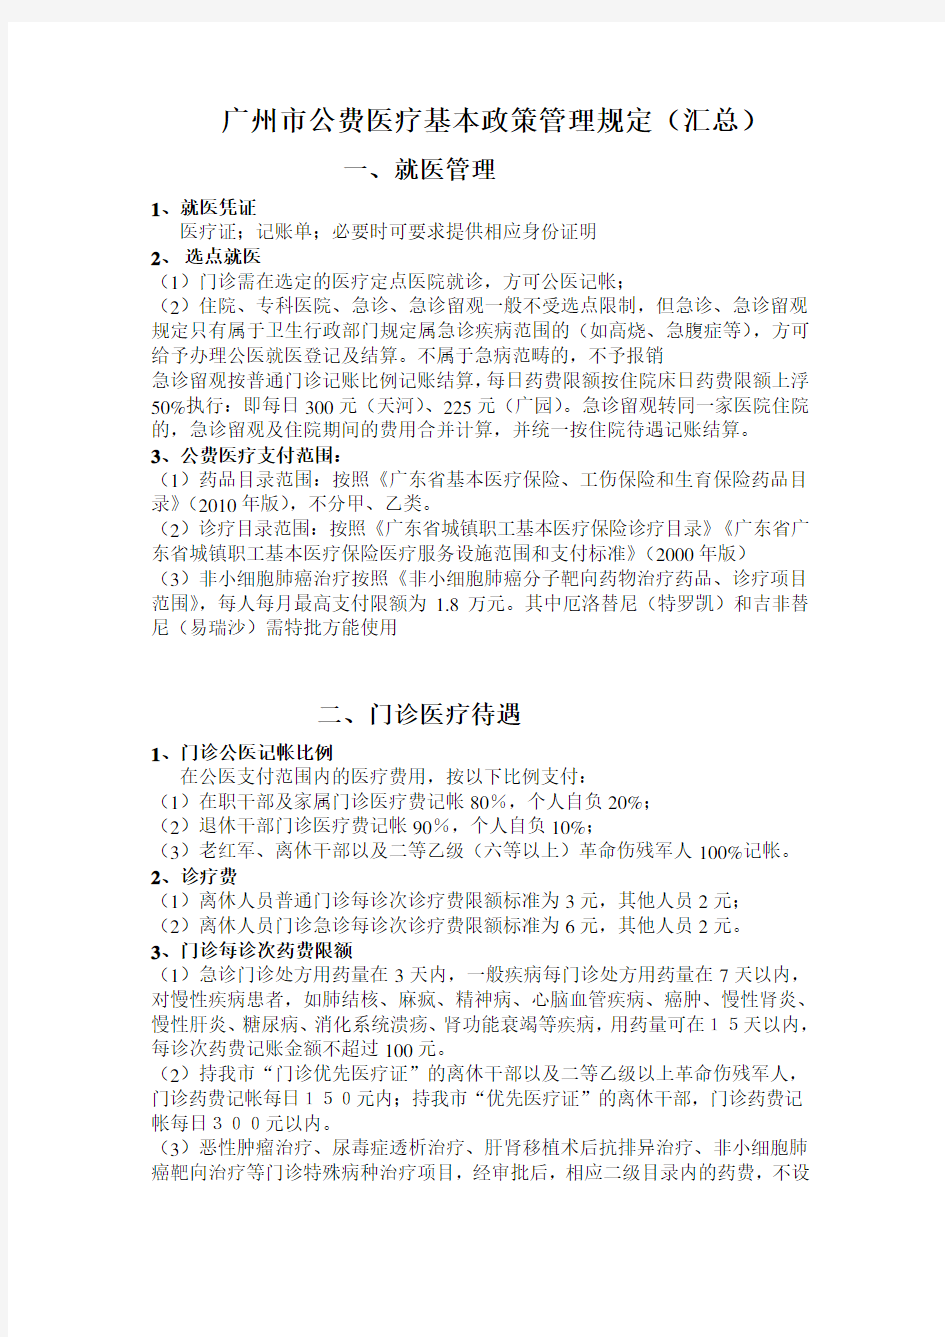 广州市公费医疗基本政策管理规定汇总